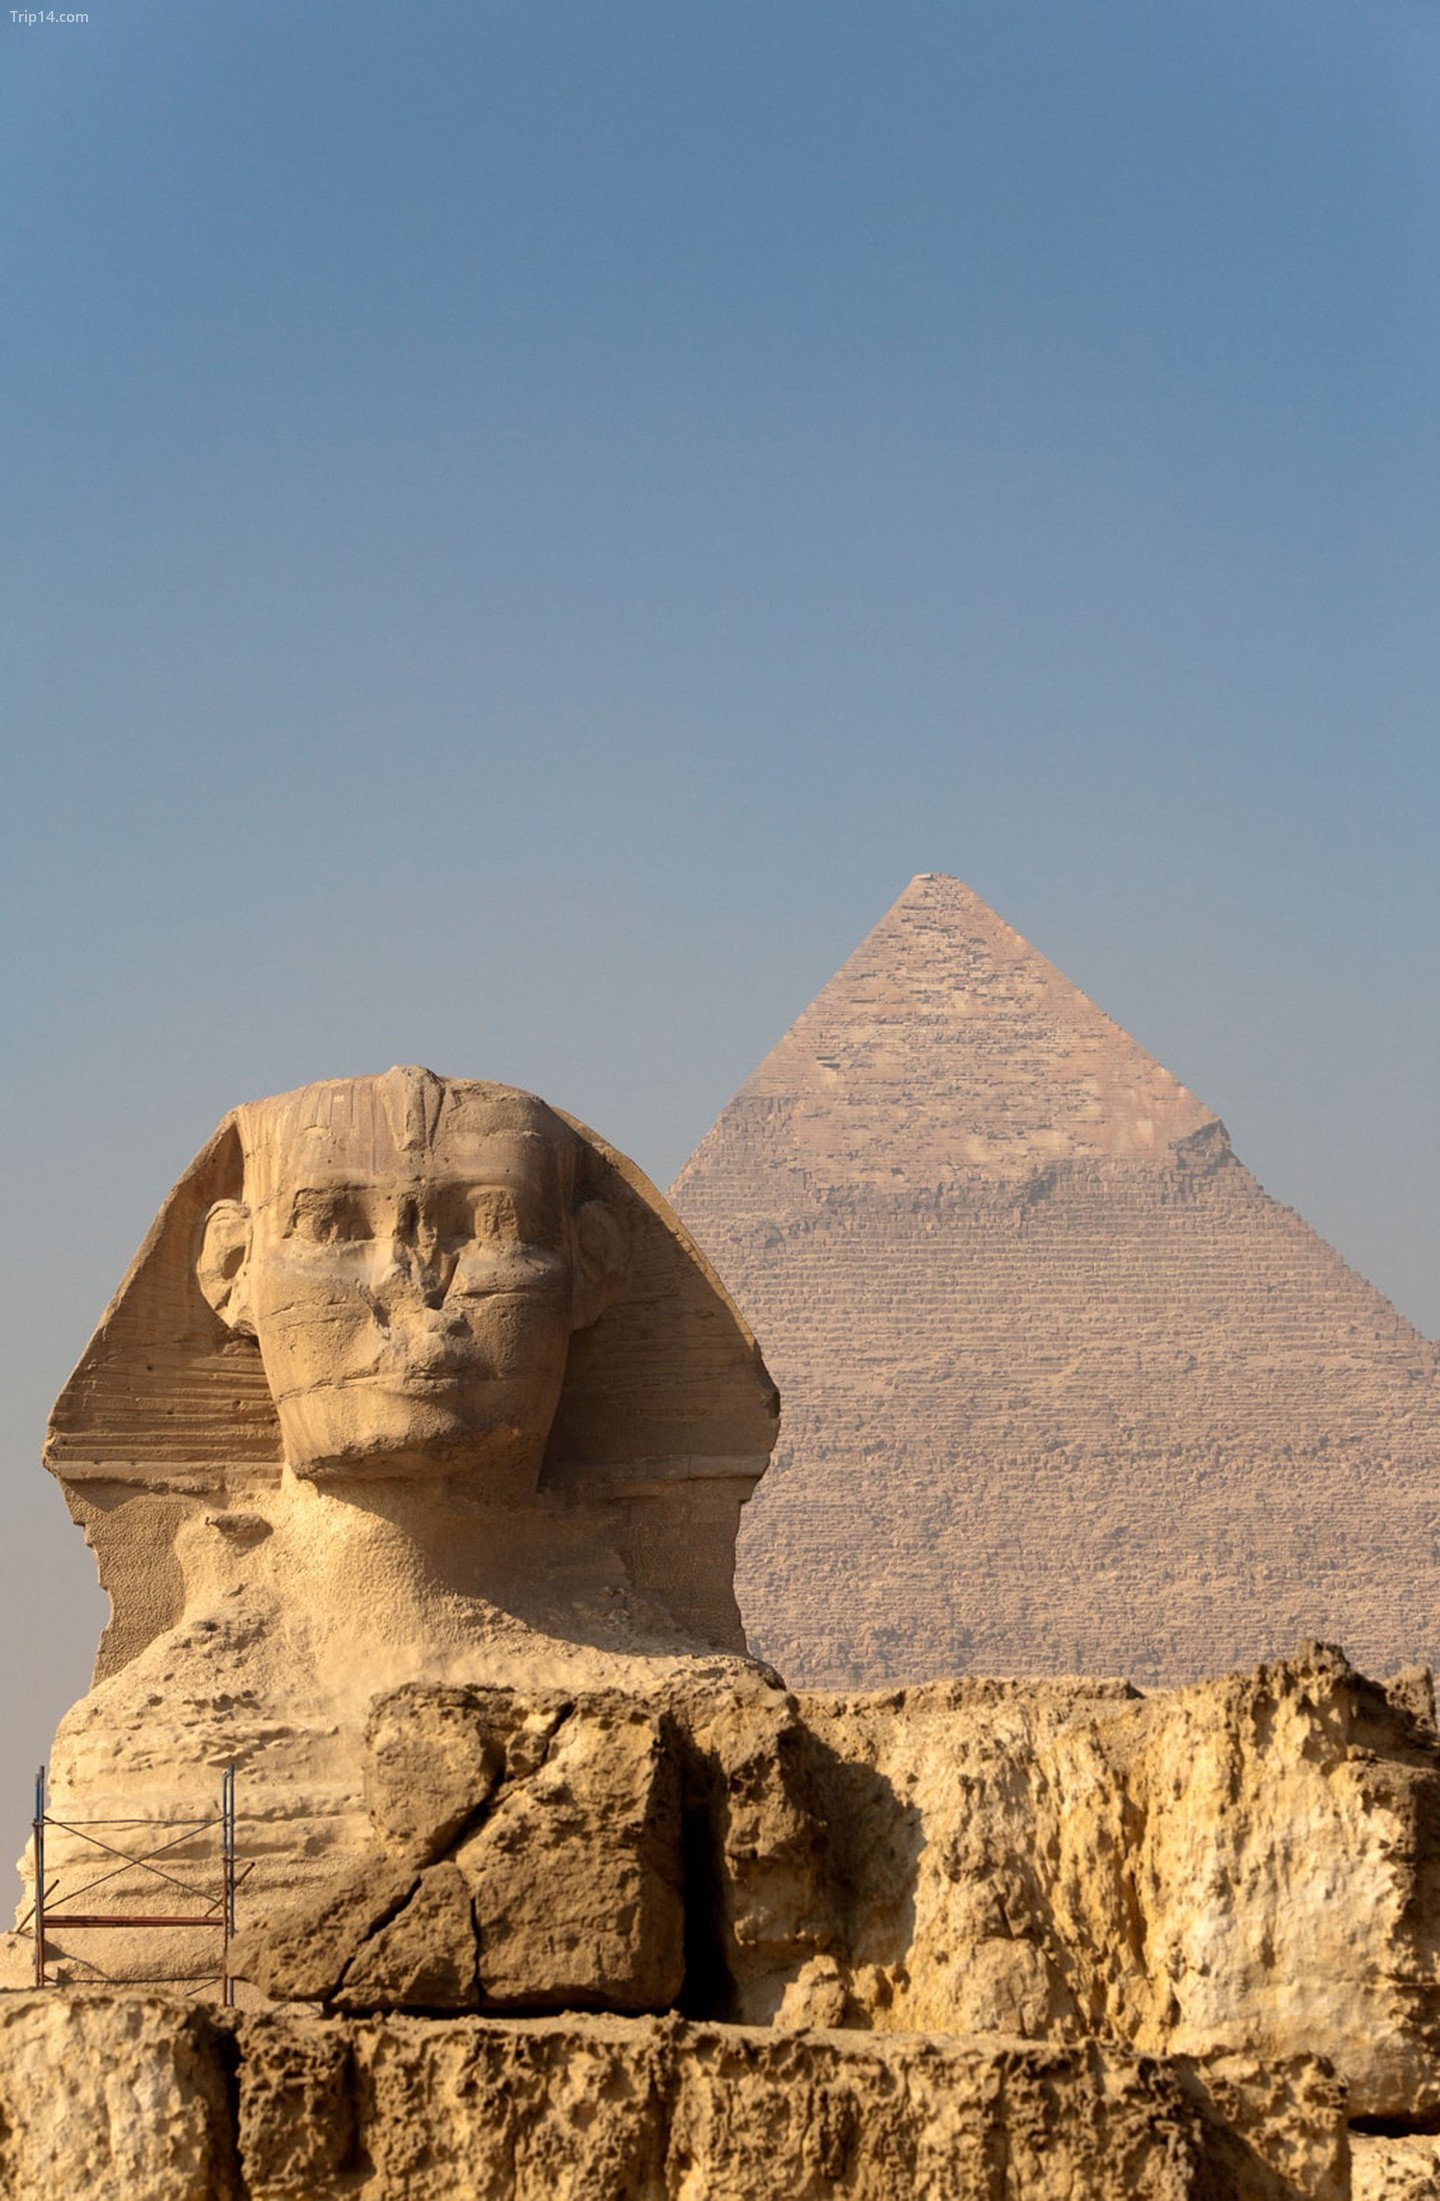 Tượng Nhân sư và Kim tự tháp Khafre (Chephren) ở Giza, Ai Cập